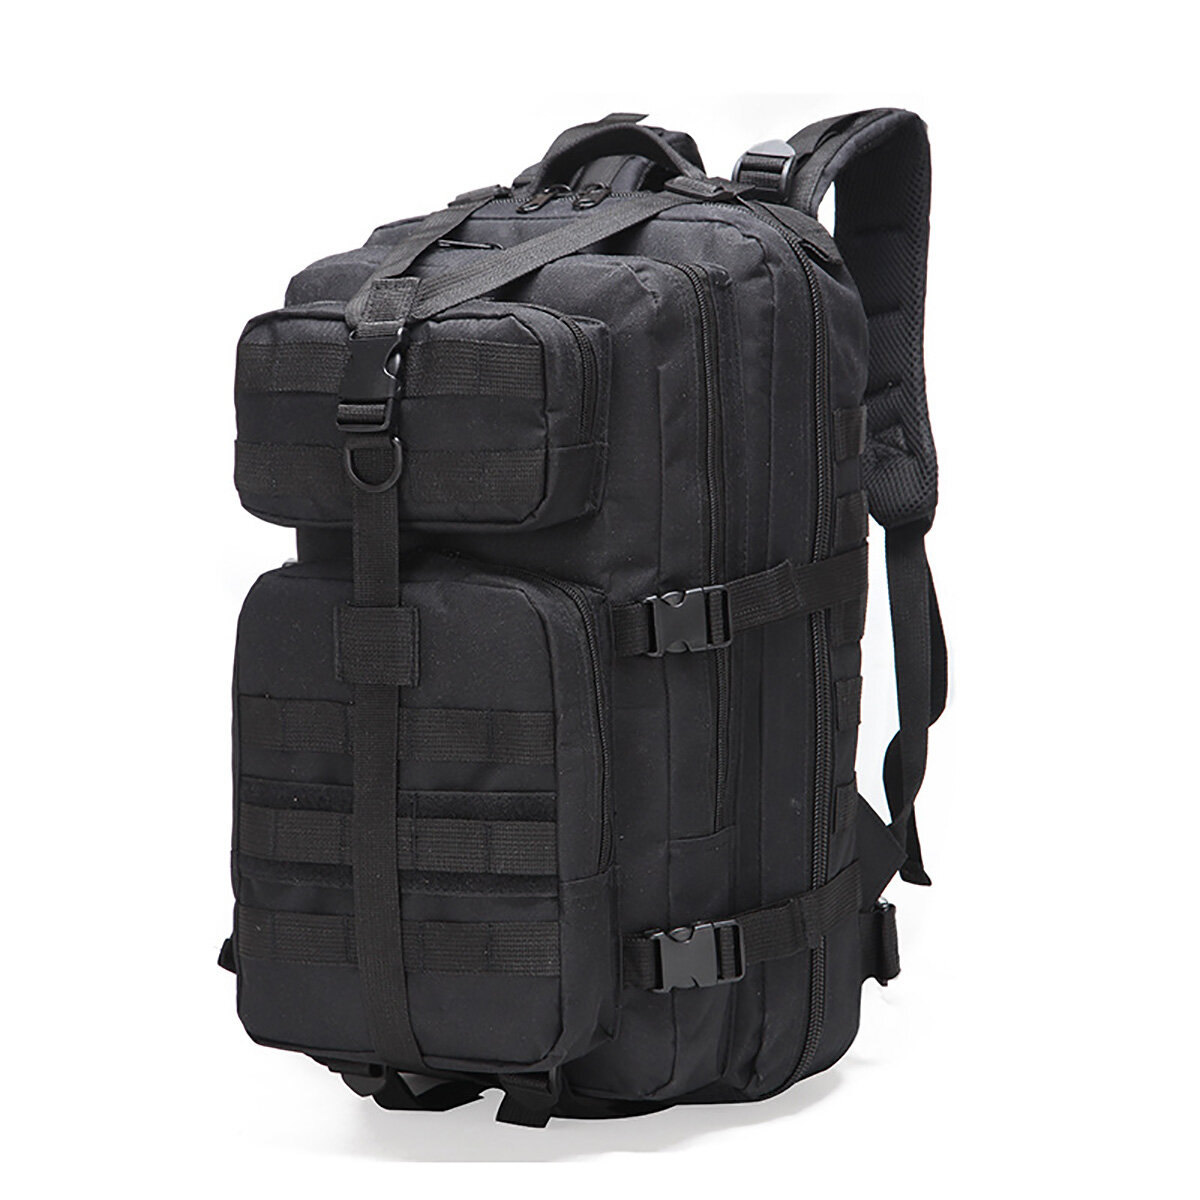 Erkekler için 35L su geçirmez sırt çantası, seyahat, kamp, yürüyüş ve açık hava tırmanışı için taktik omuz çantası.